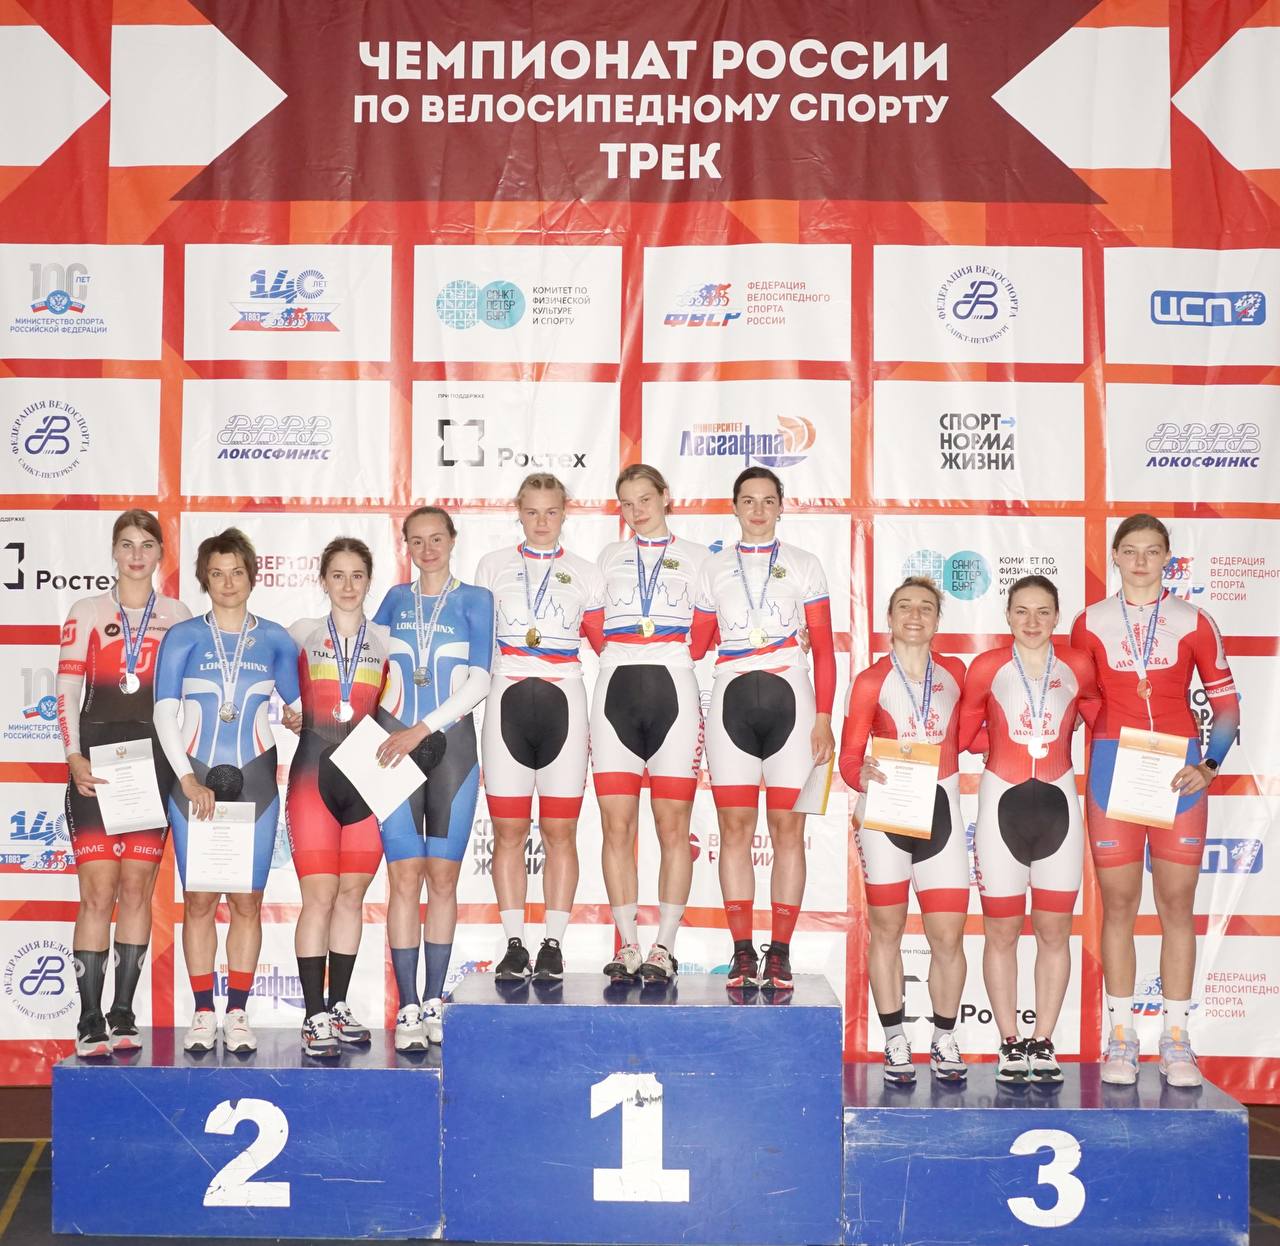 Туляки завоевали серебряные медали на чемпионате России по велоспорту на треке